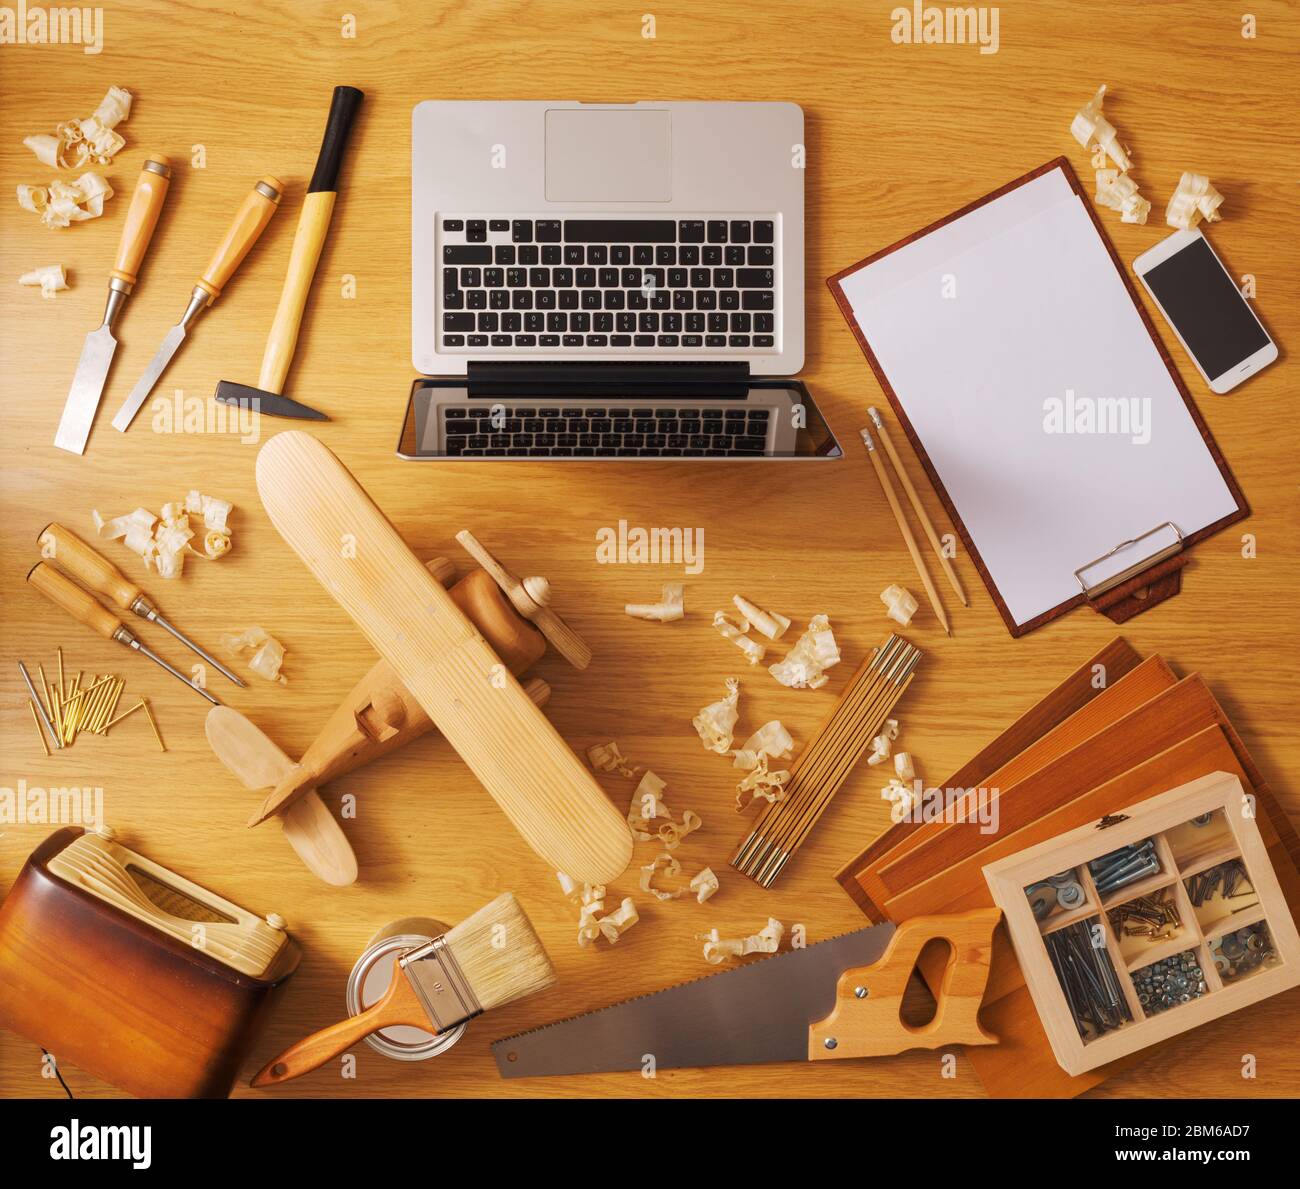 Proyecto de bricolaje en casa concepto, mesa de trabajo con avión de juguete de madera artesanales y herramientas de trabajo de carpintería, vista superior Foto de stock